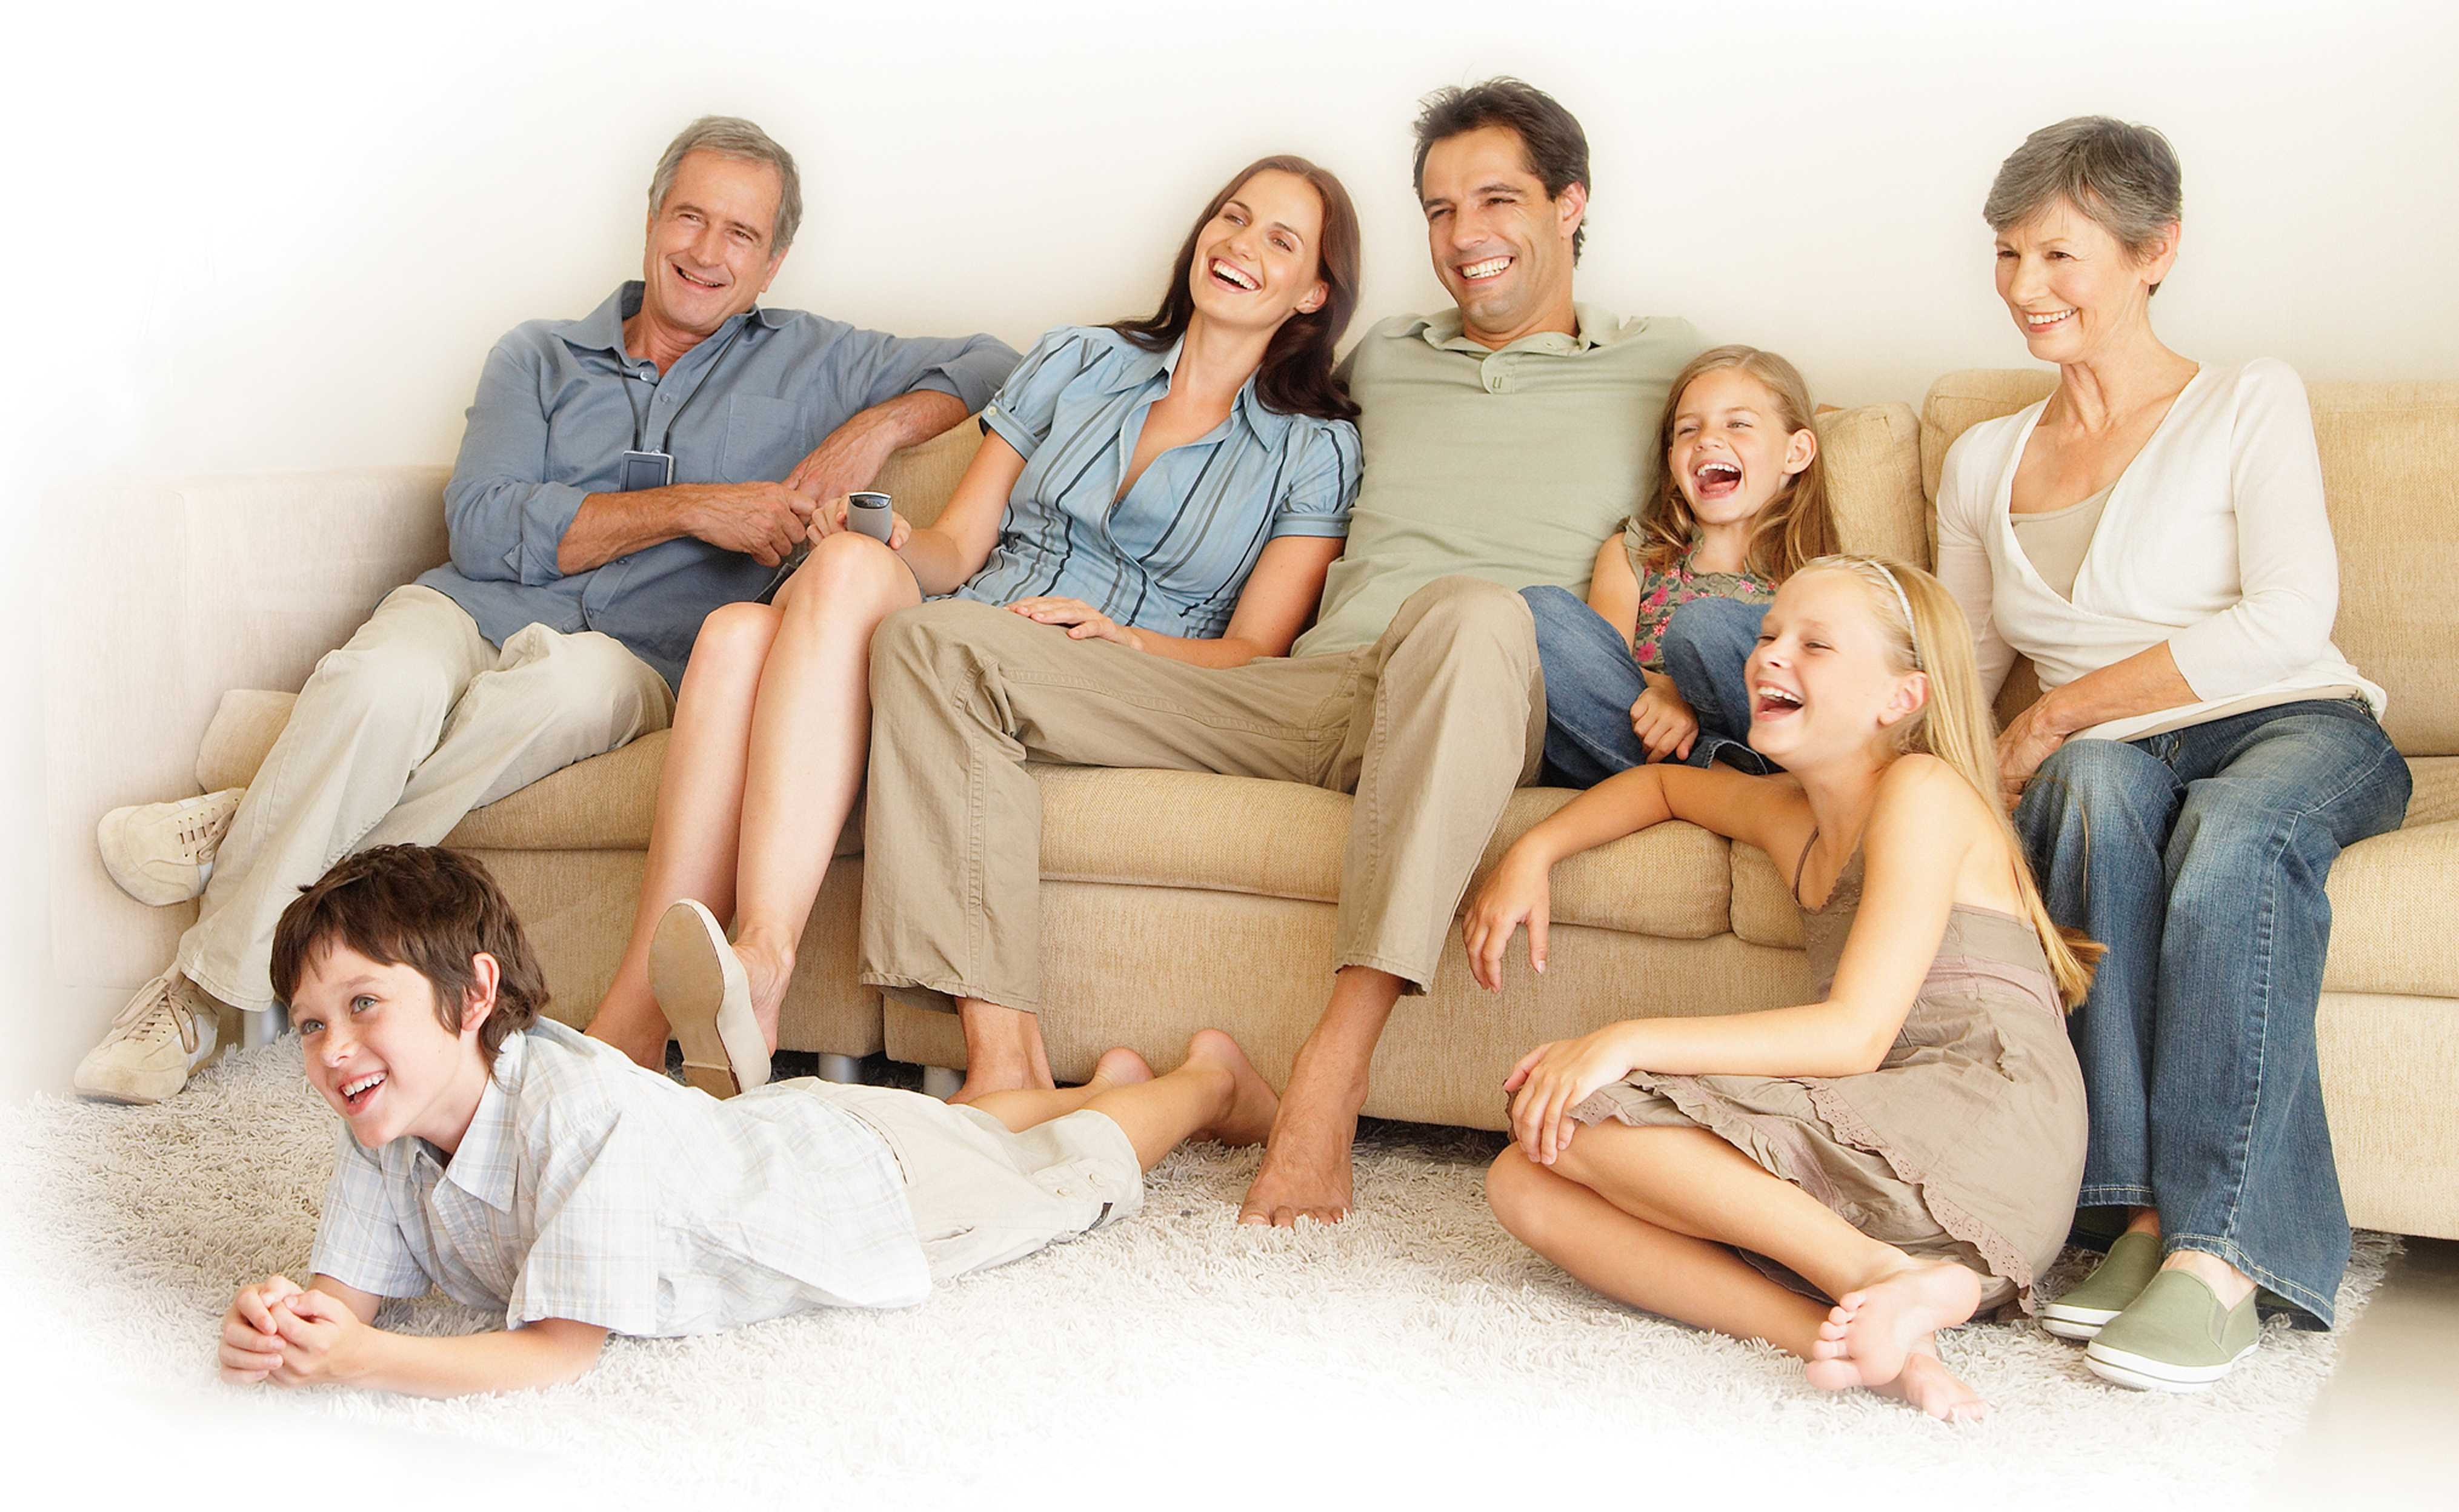 Сайт для просмотра вместе с другом. Семья, дом. Семья у телевизора. Семья на диване. Семья сидит в гостиной.